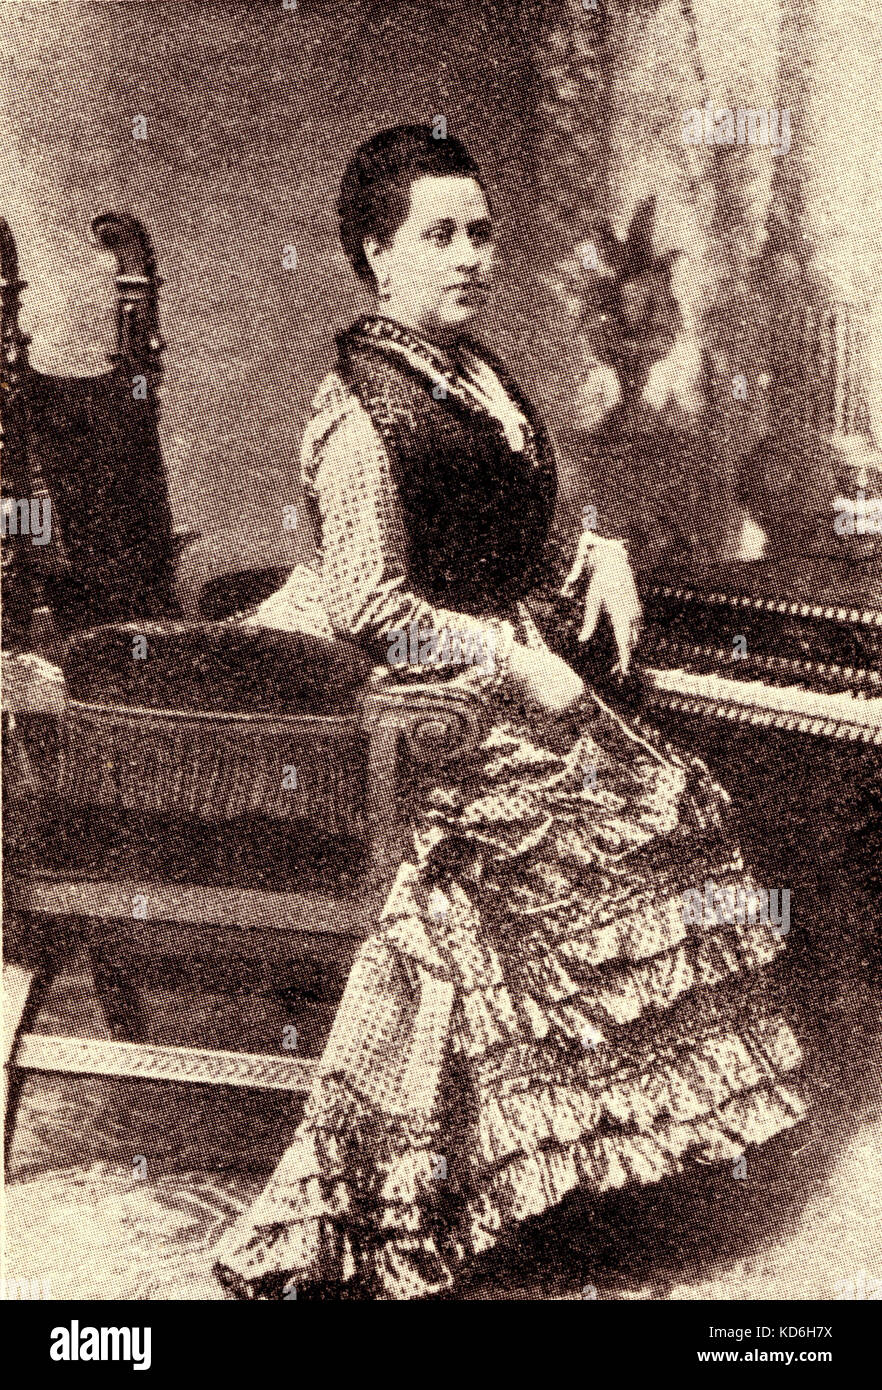 Marie Wieck at the piano. Clara Wieck's (later Schumann) sister. Clara Schumann: German pianist (1819-1896), wife of the composer, Robert Schumann Stock Photo